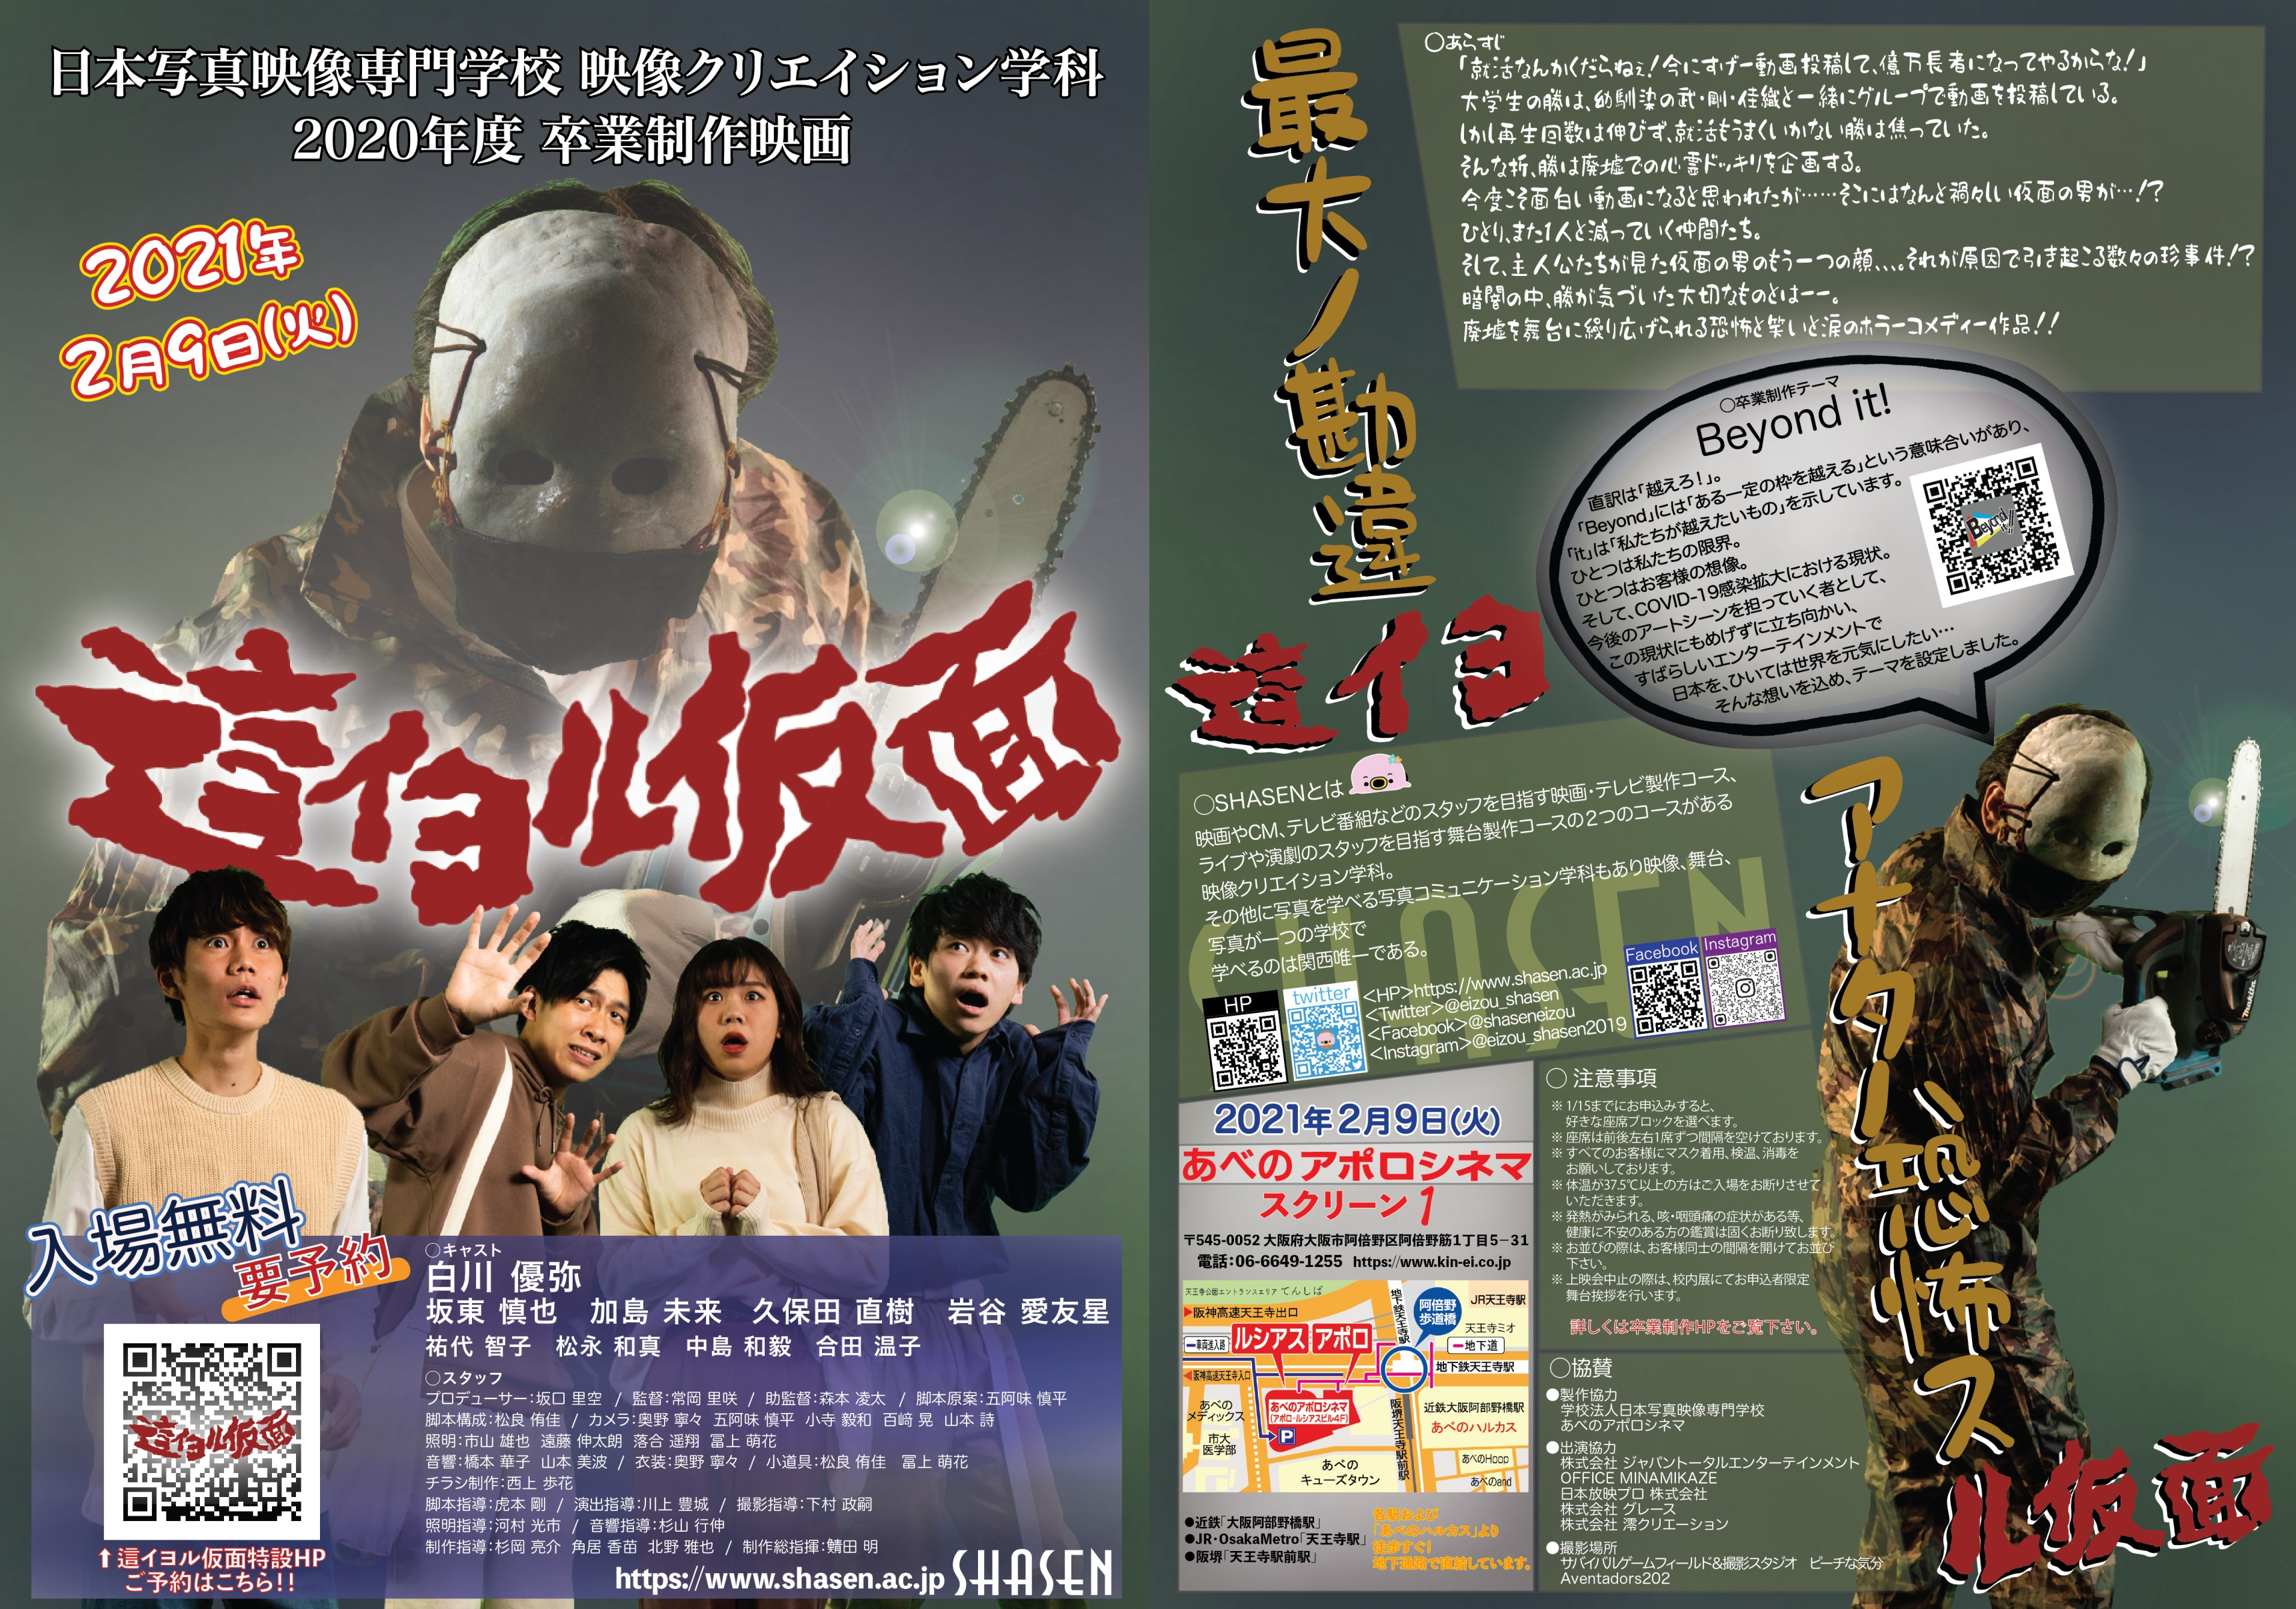 【出演情報】日本写真映像専門学校の卒業制作映画「這イヨル仮面」に、弊社キャストが出演します！